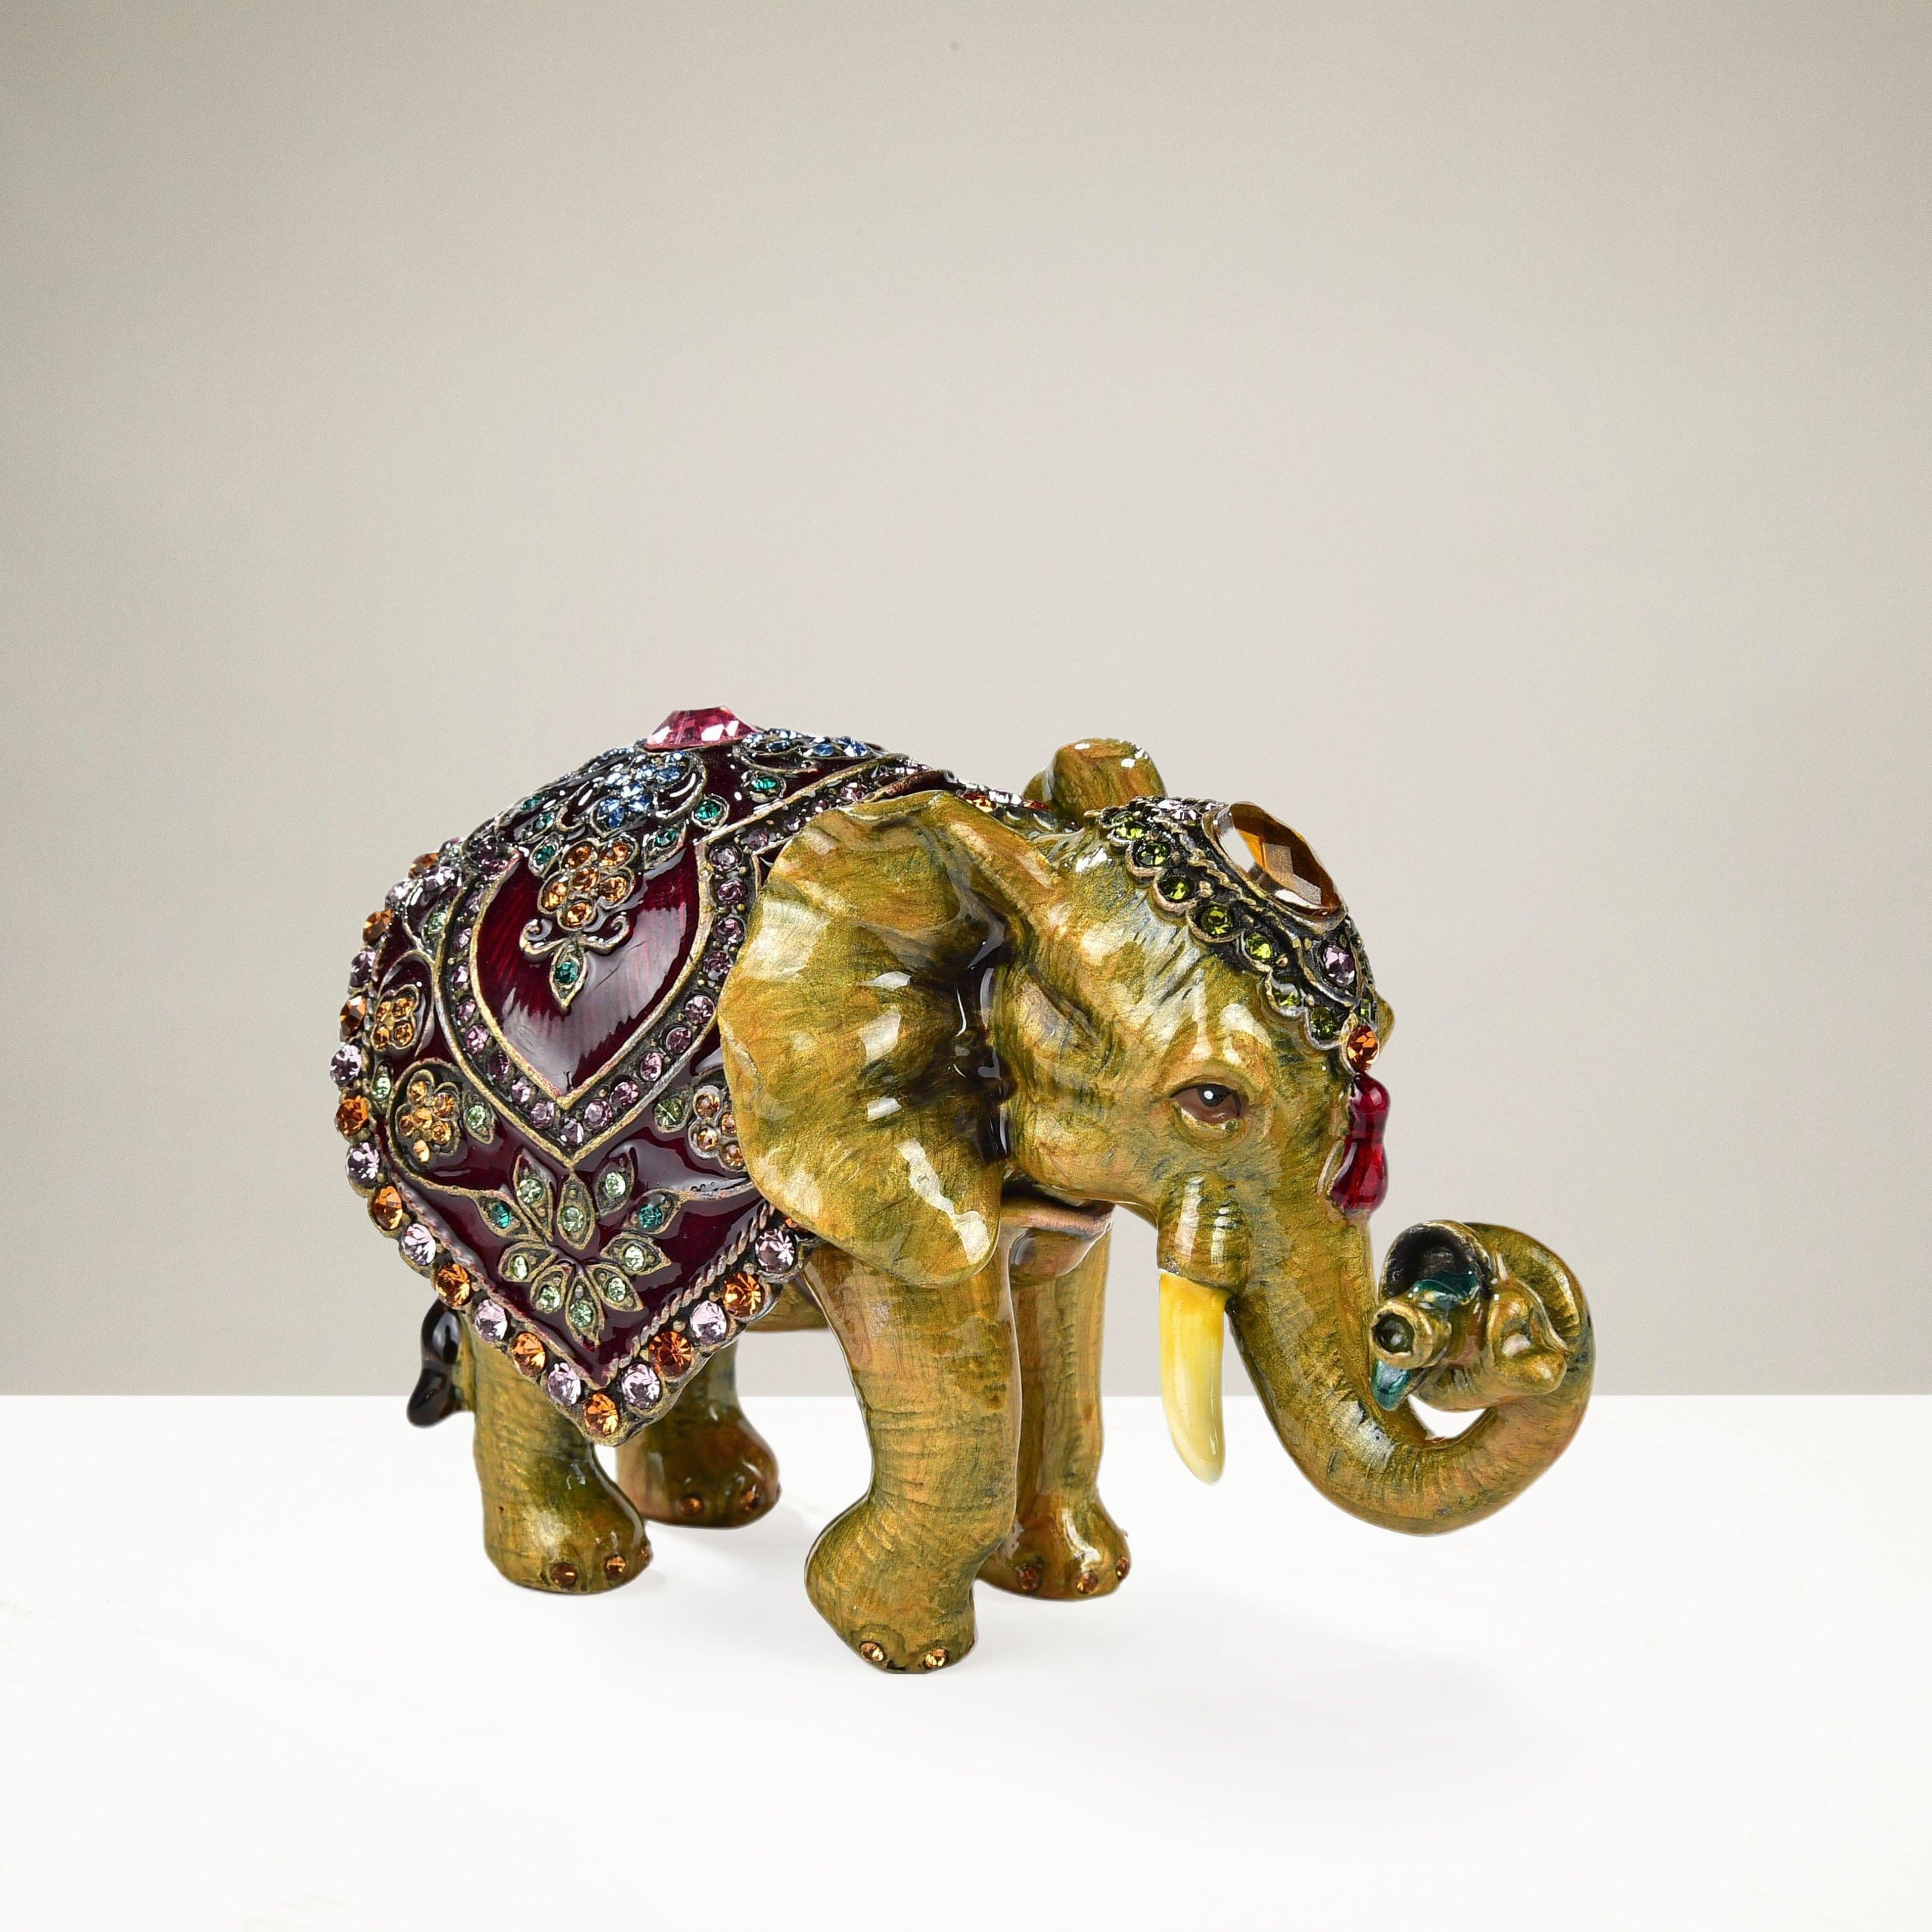 Elephant Shaker Set — Therezinha Gifts